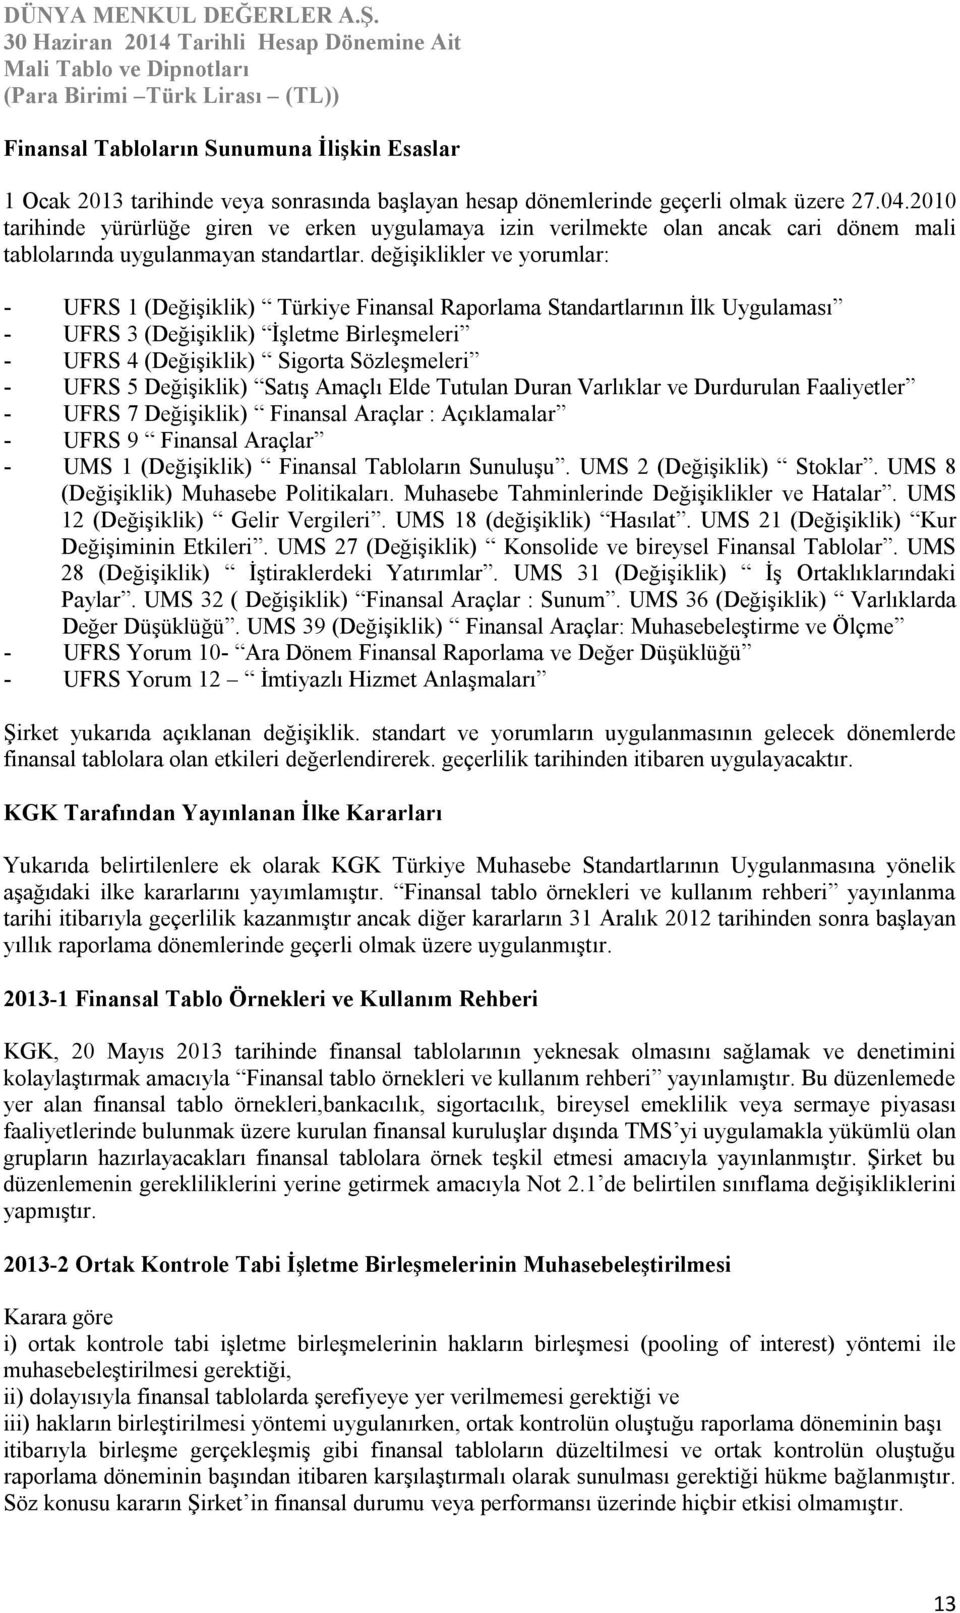 değişiklikler ve yorumlar: - UFRS 1 (Değişiklik) Türkiye Finansal Raporlama Standartlarının İlk Uygulaması - UFRS 3 (Değişiklik) İşletme Birleşmeleri - UFRS 4 (Değişiklik) Sigorta Sözleşmeleri - UFRS